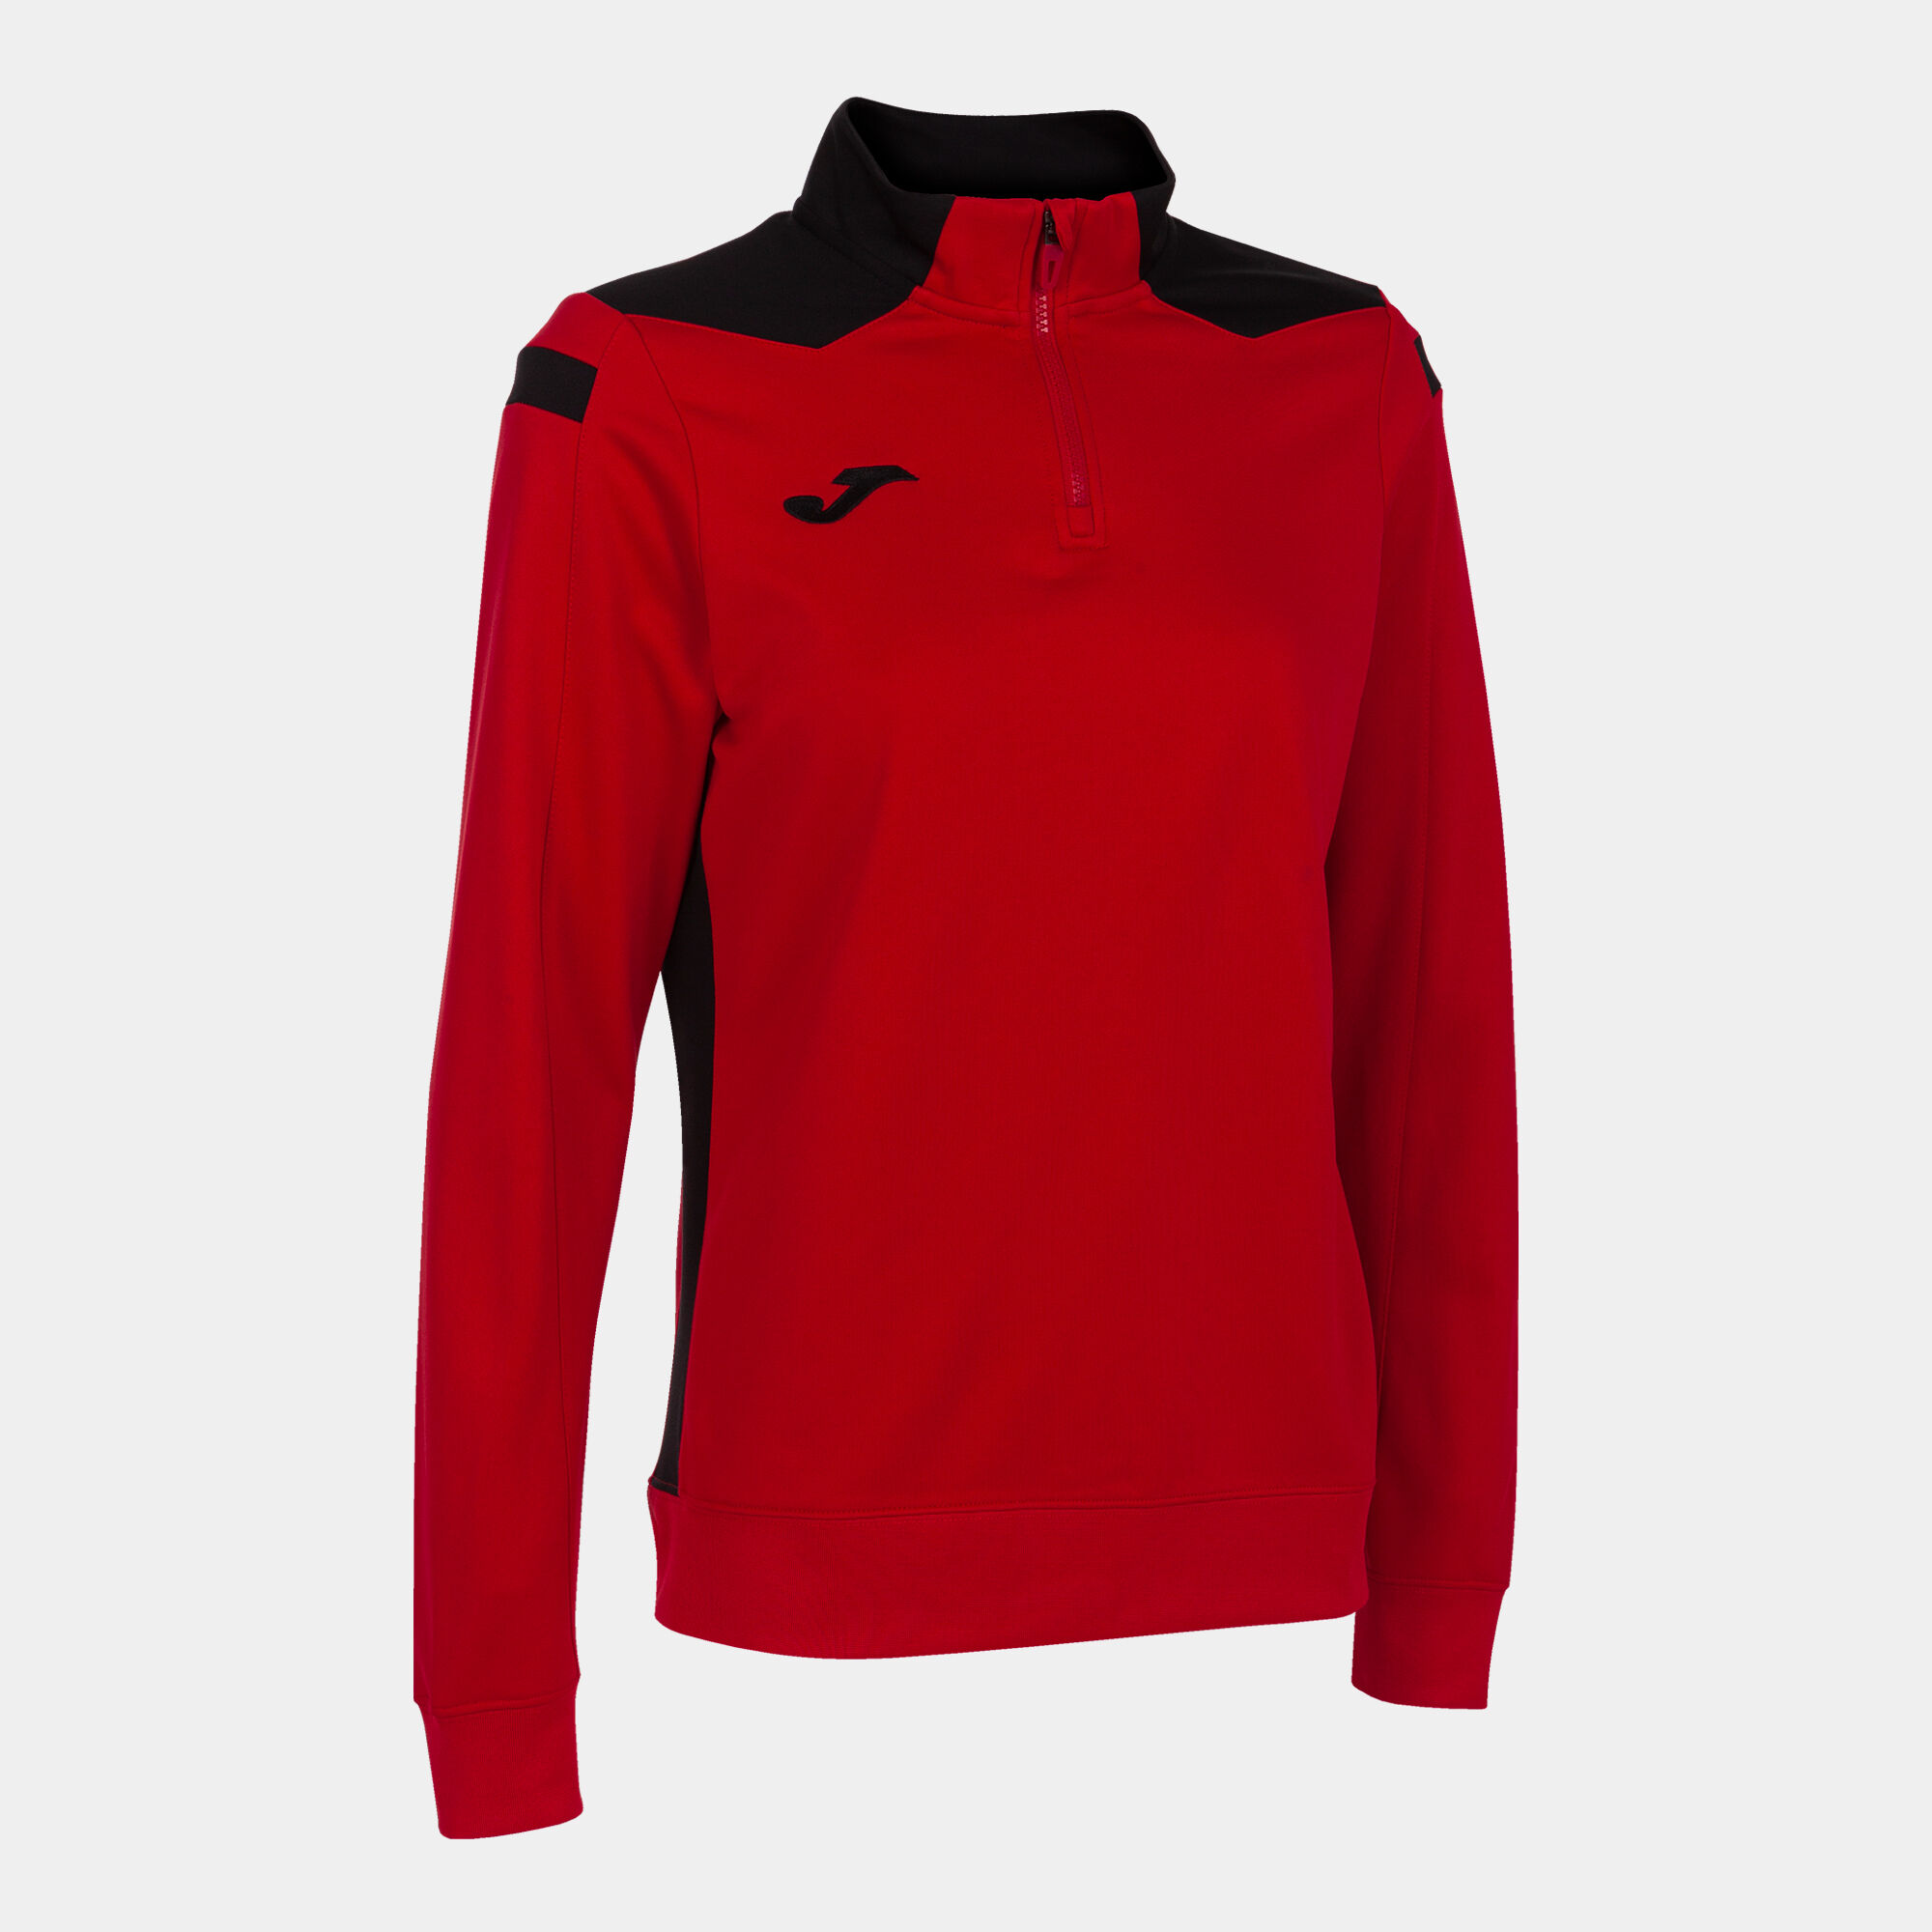 Sweat-shirt femme Championship VI rouge noir